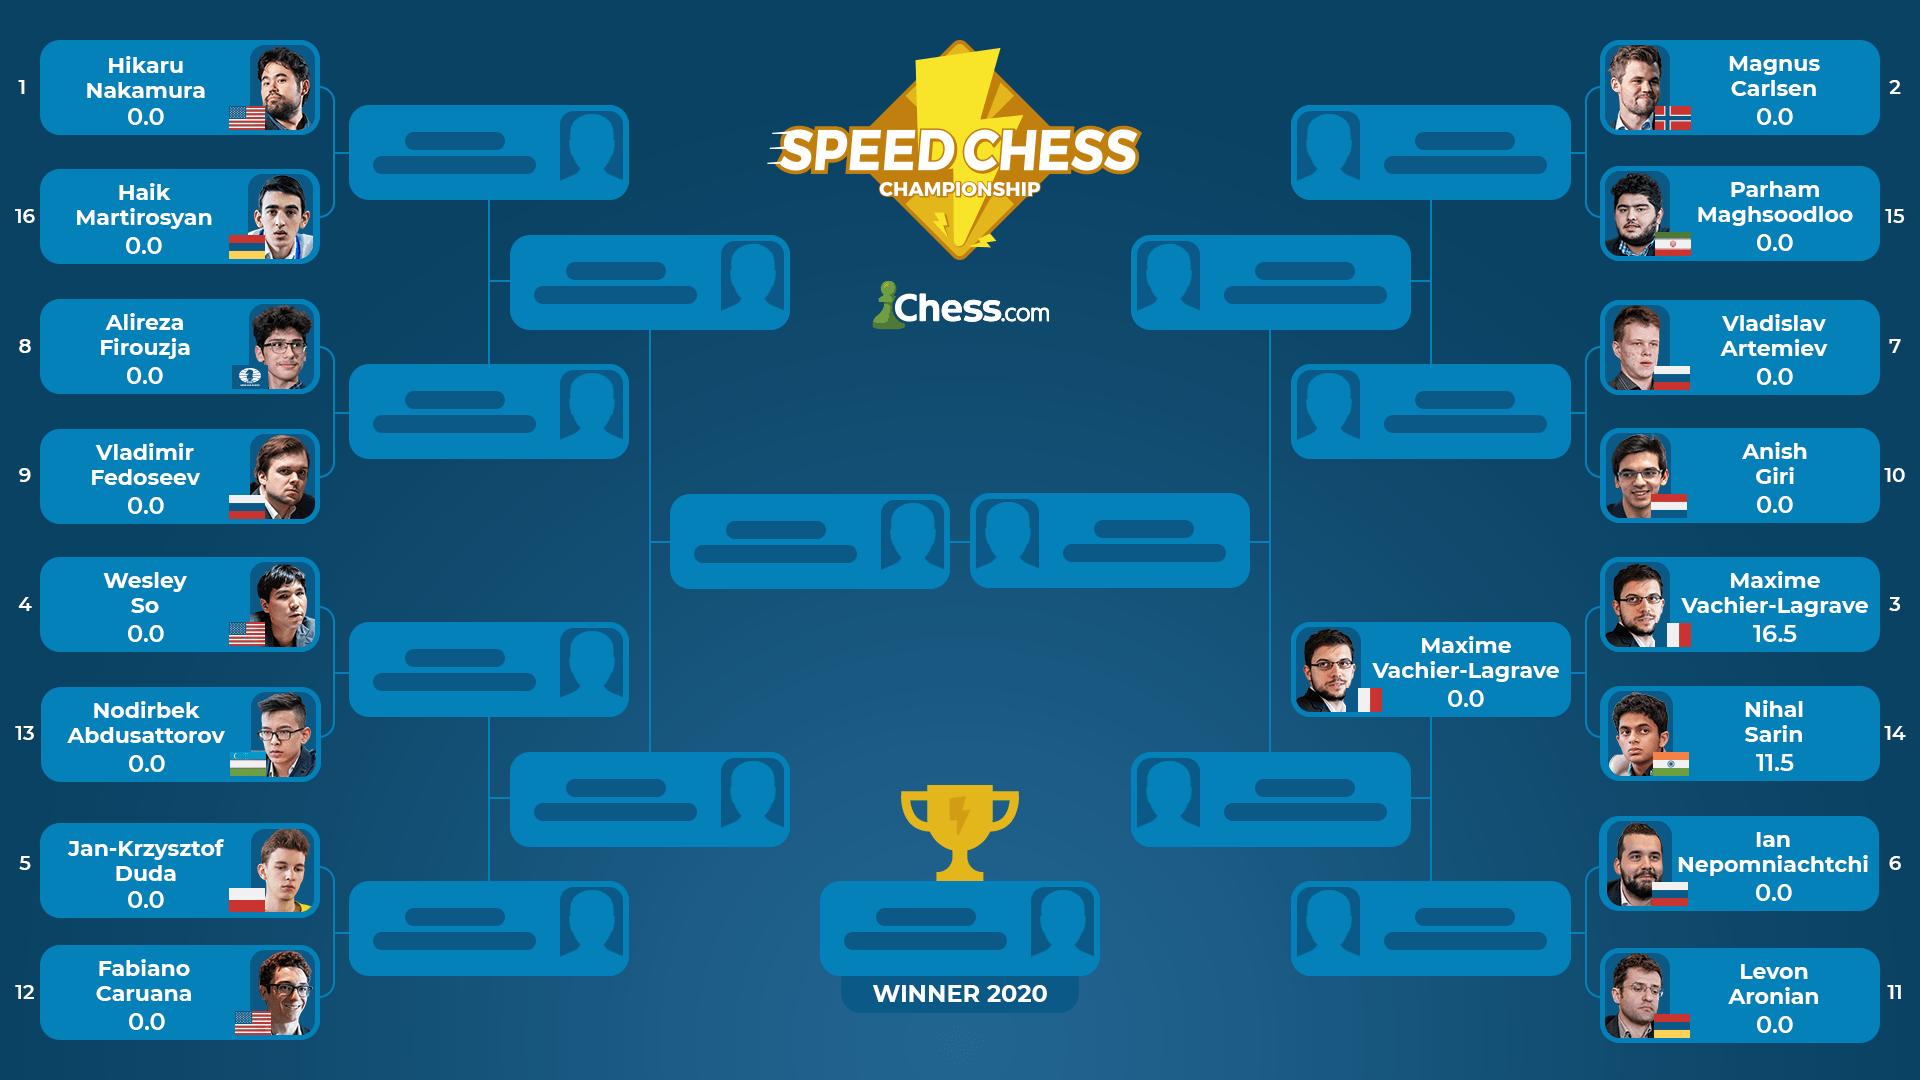 Speed Chess Championship. Լևոն Արոնյանն ու Հայկ Մարտիրոսյանը մեկնարկում են մրցաշարում